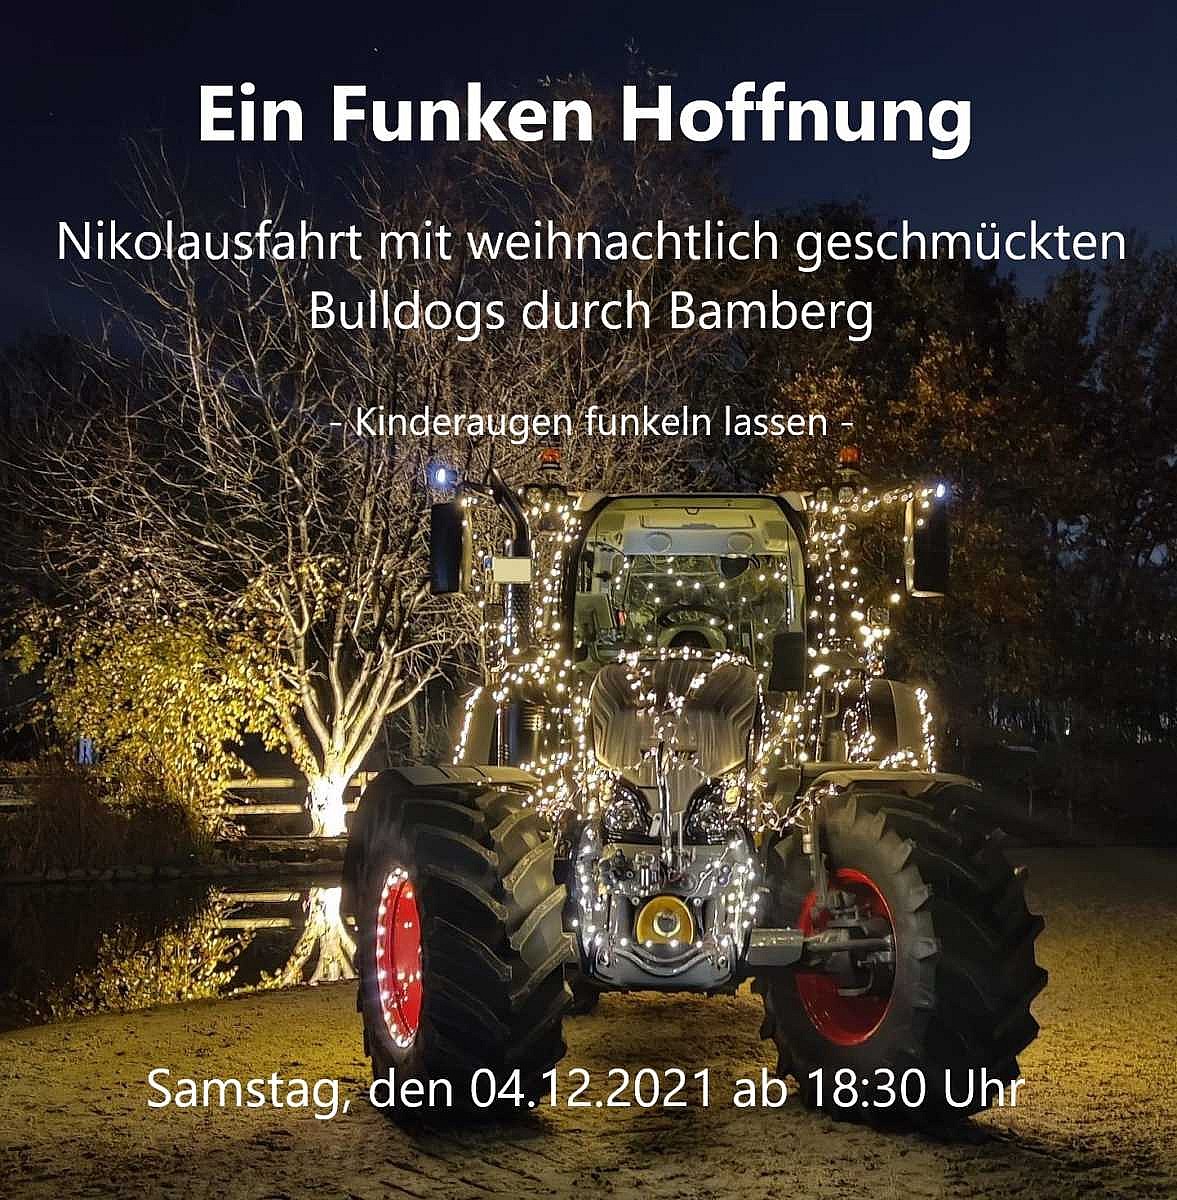 Lichterfahrt mit Traktor: Familie Stöhr bringt einen Funken Hoffnung